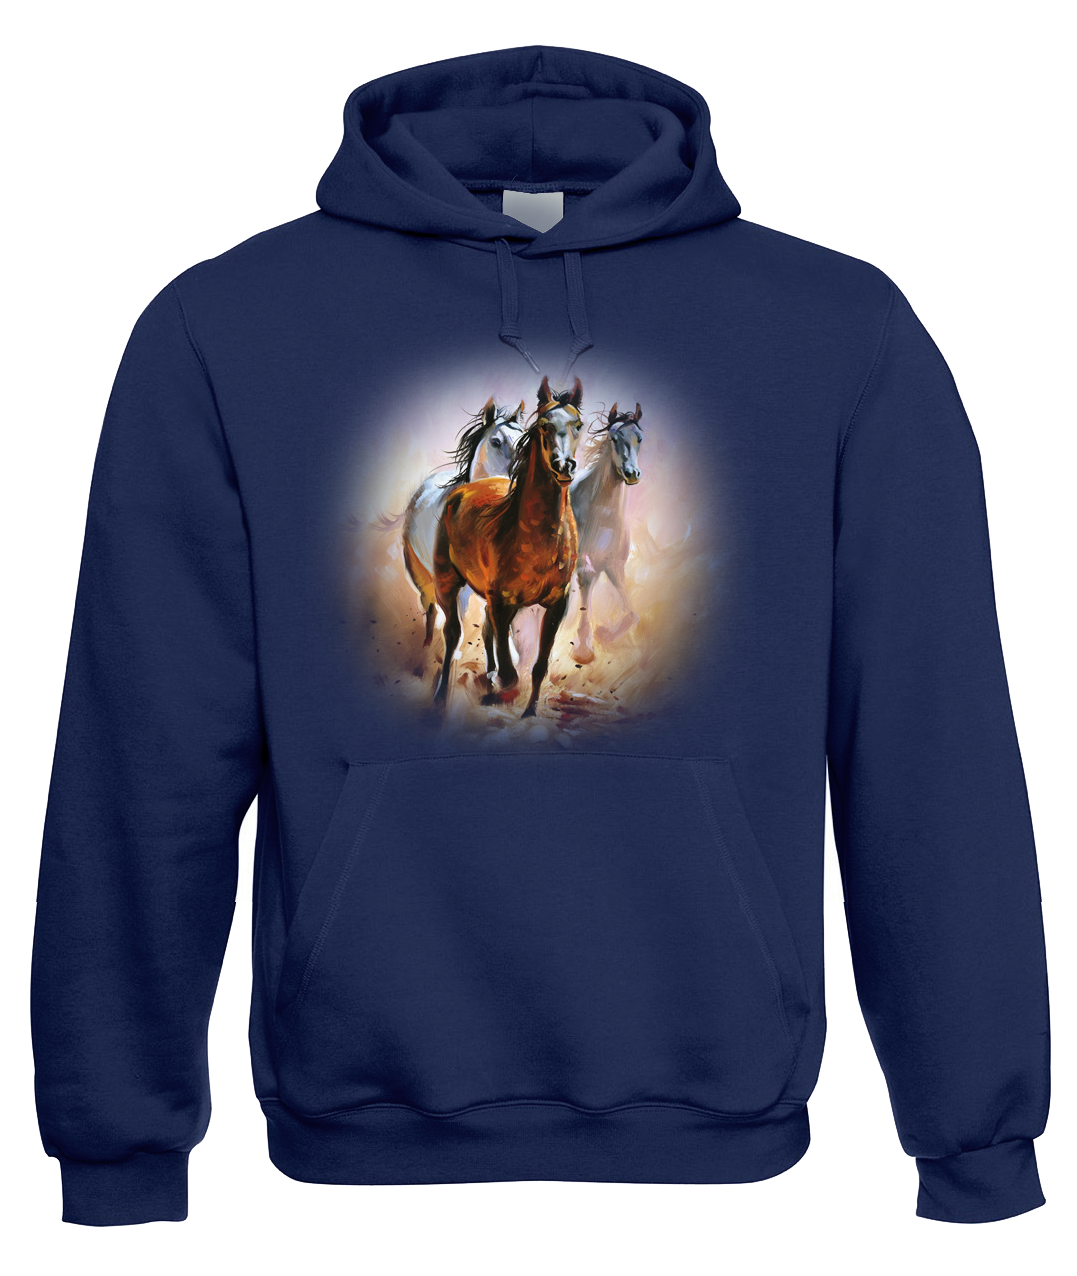 Mikina s koněm - Malované koně Velikost: 2XL, Barva: Tmavě modrá